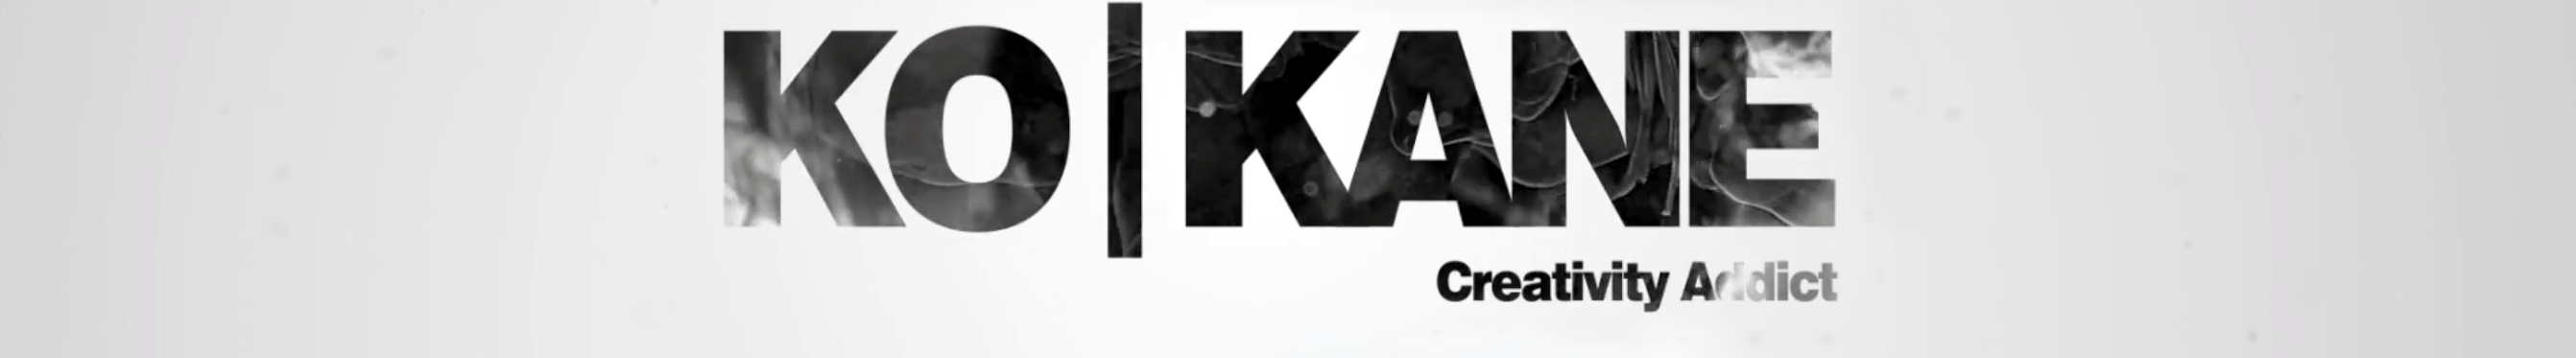 Ko-Kane LLC's profile banner